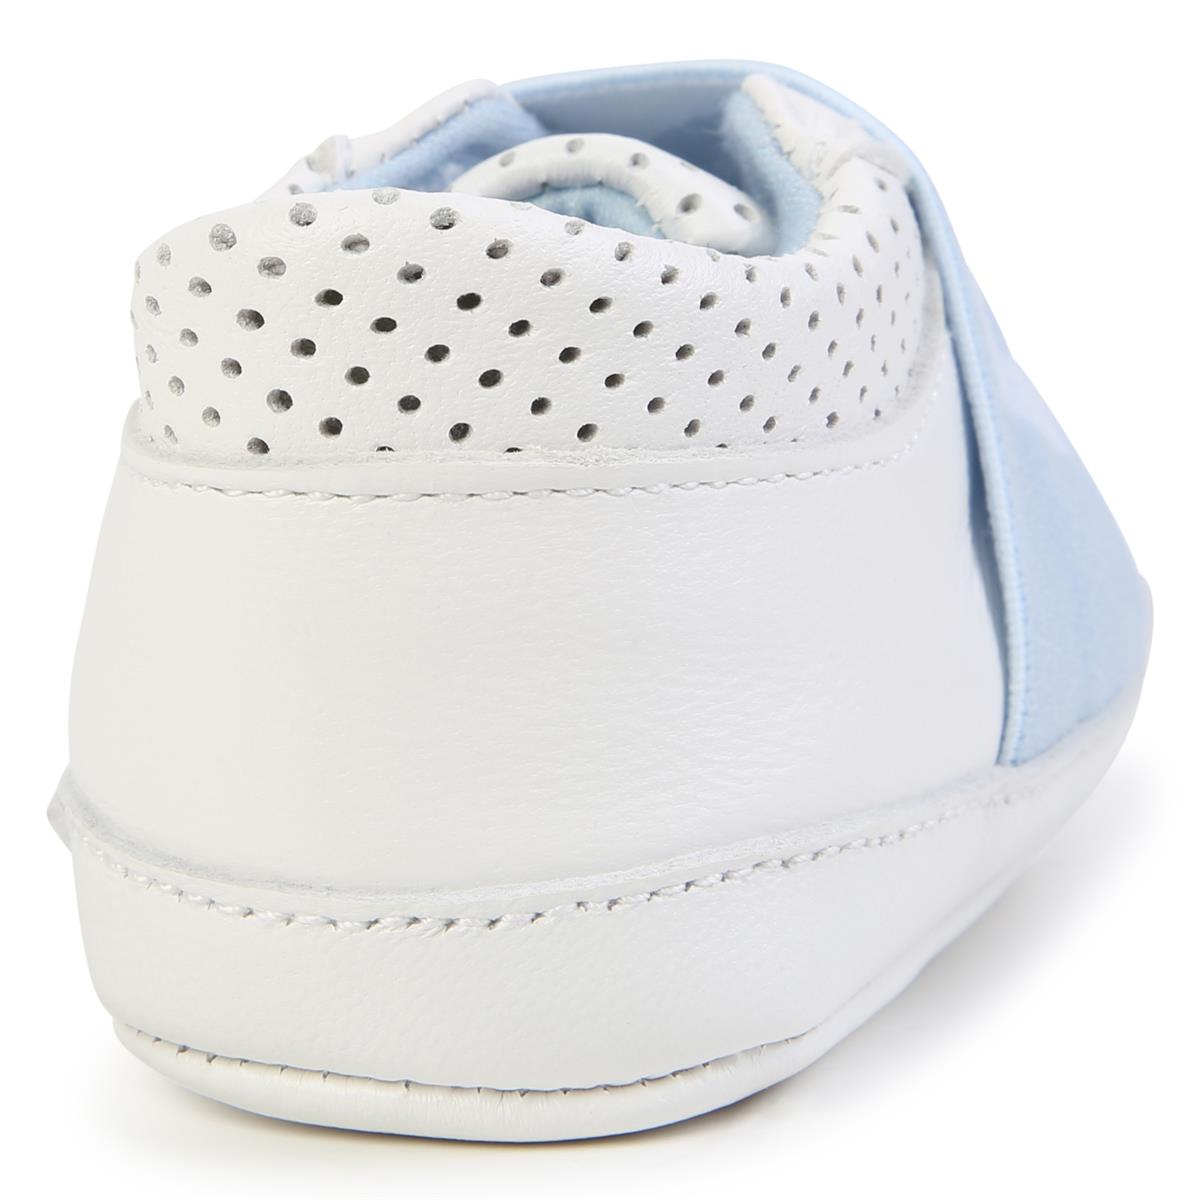 Baby Boys White Flat Shoes